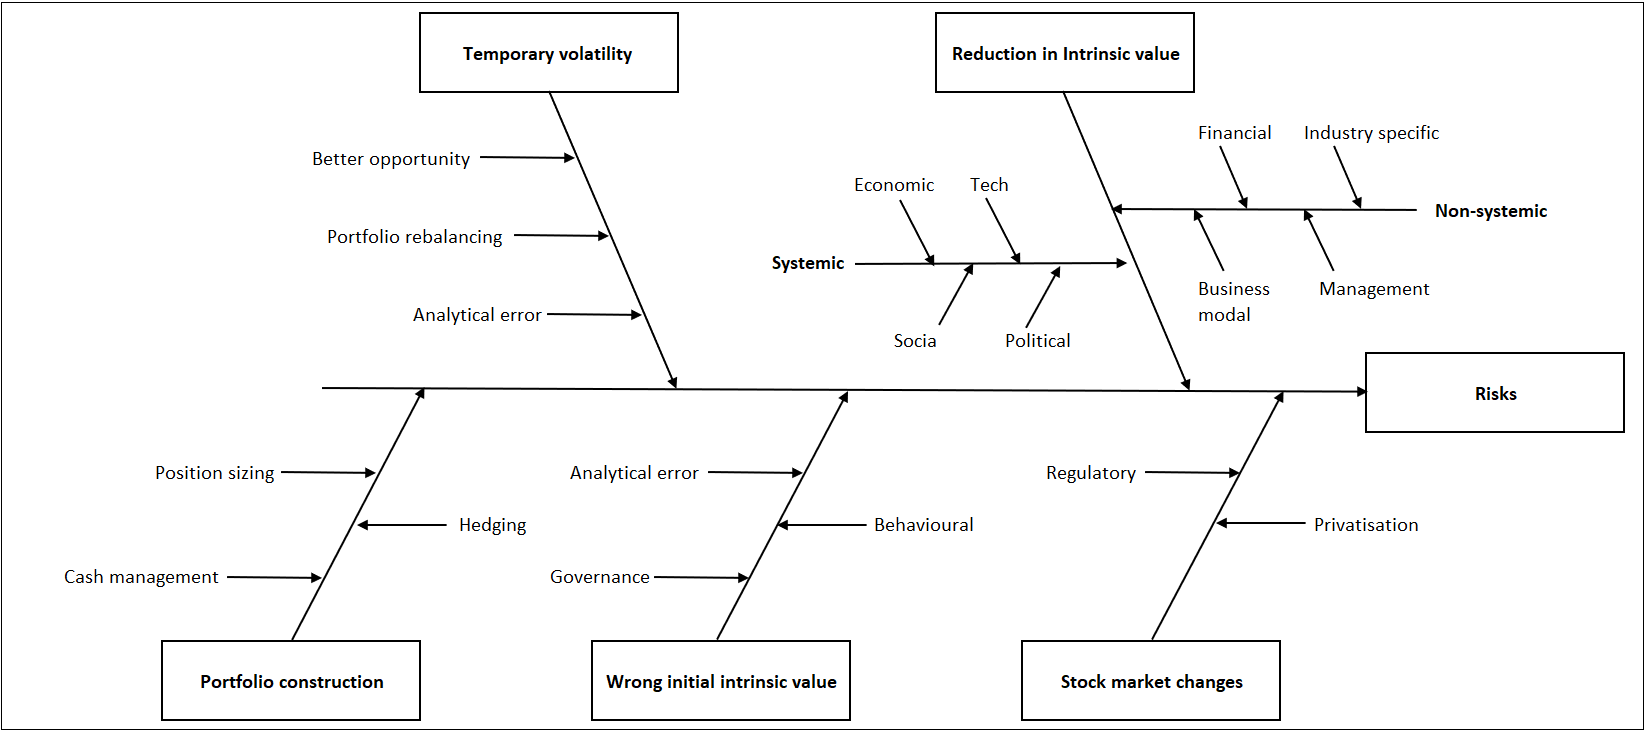 Chart 8: Update Fishbone Diagram incorporating Volatility